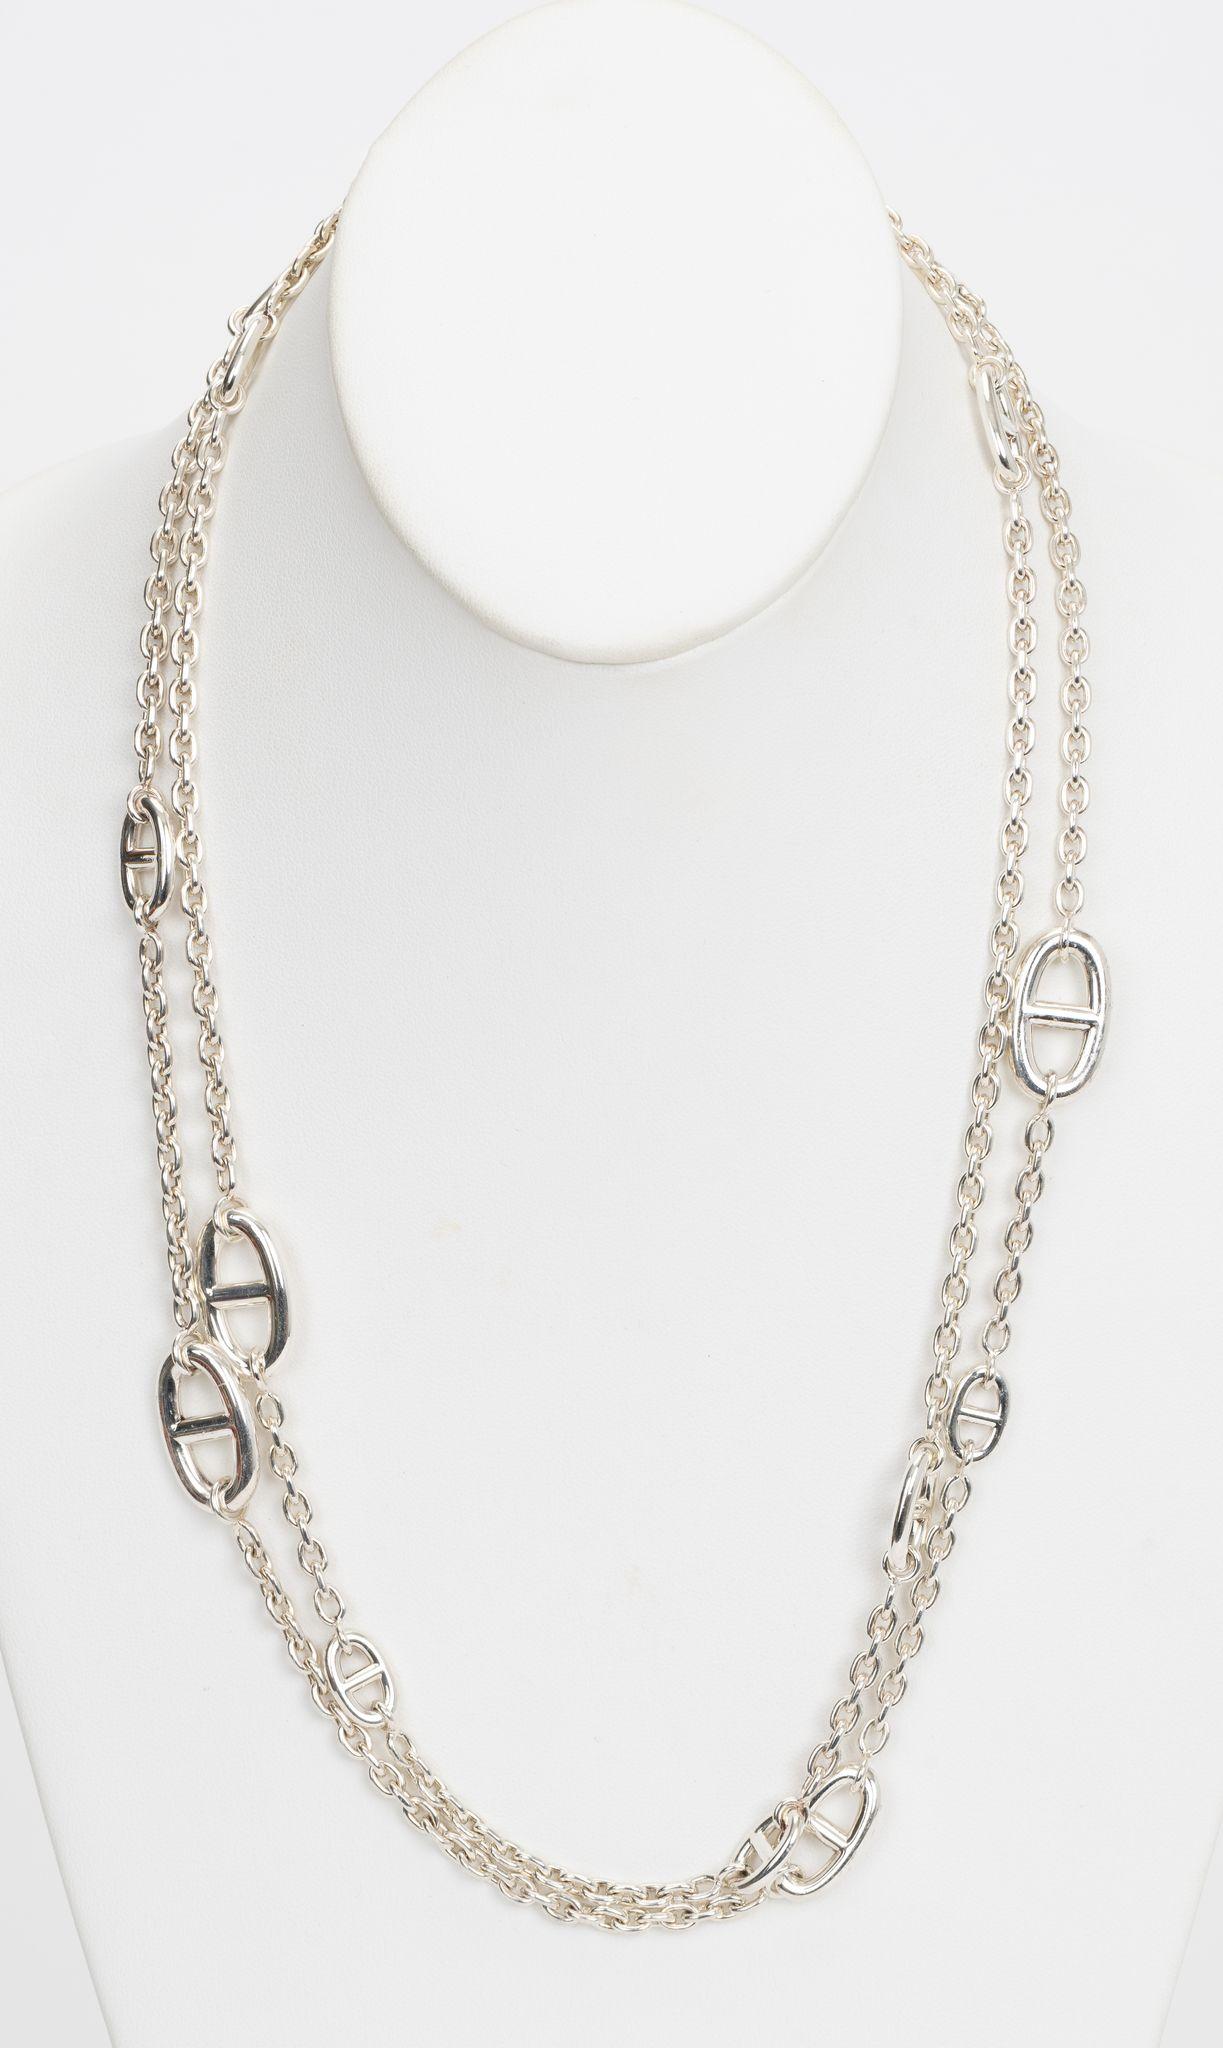 Lange Hermes Farandole-Halskette mit dem kultigen Chaine d'Ancre-Motiv. Kann doppelt gewickelt getragen werden, die Gesamtlänge beträgt 160 cm. Kommt mit Original-Schmuckkästchen.